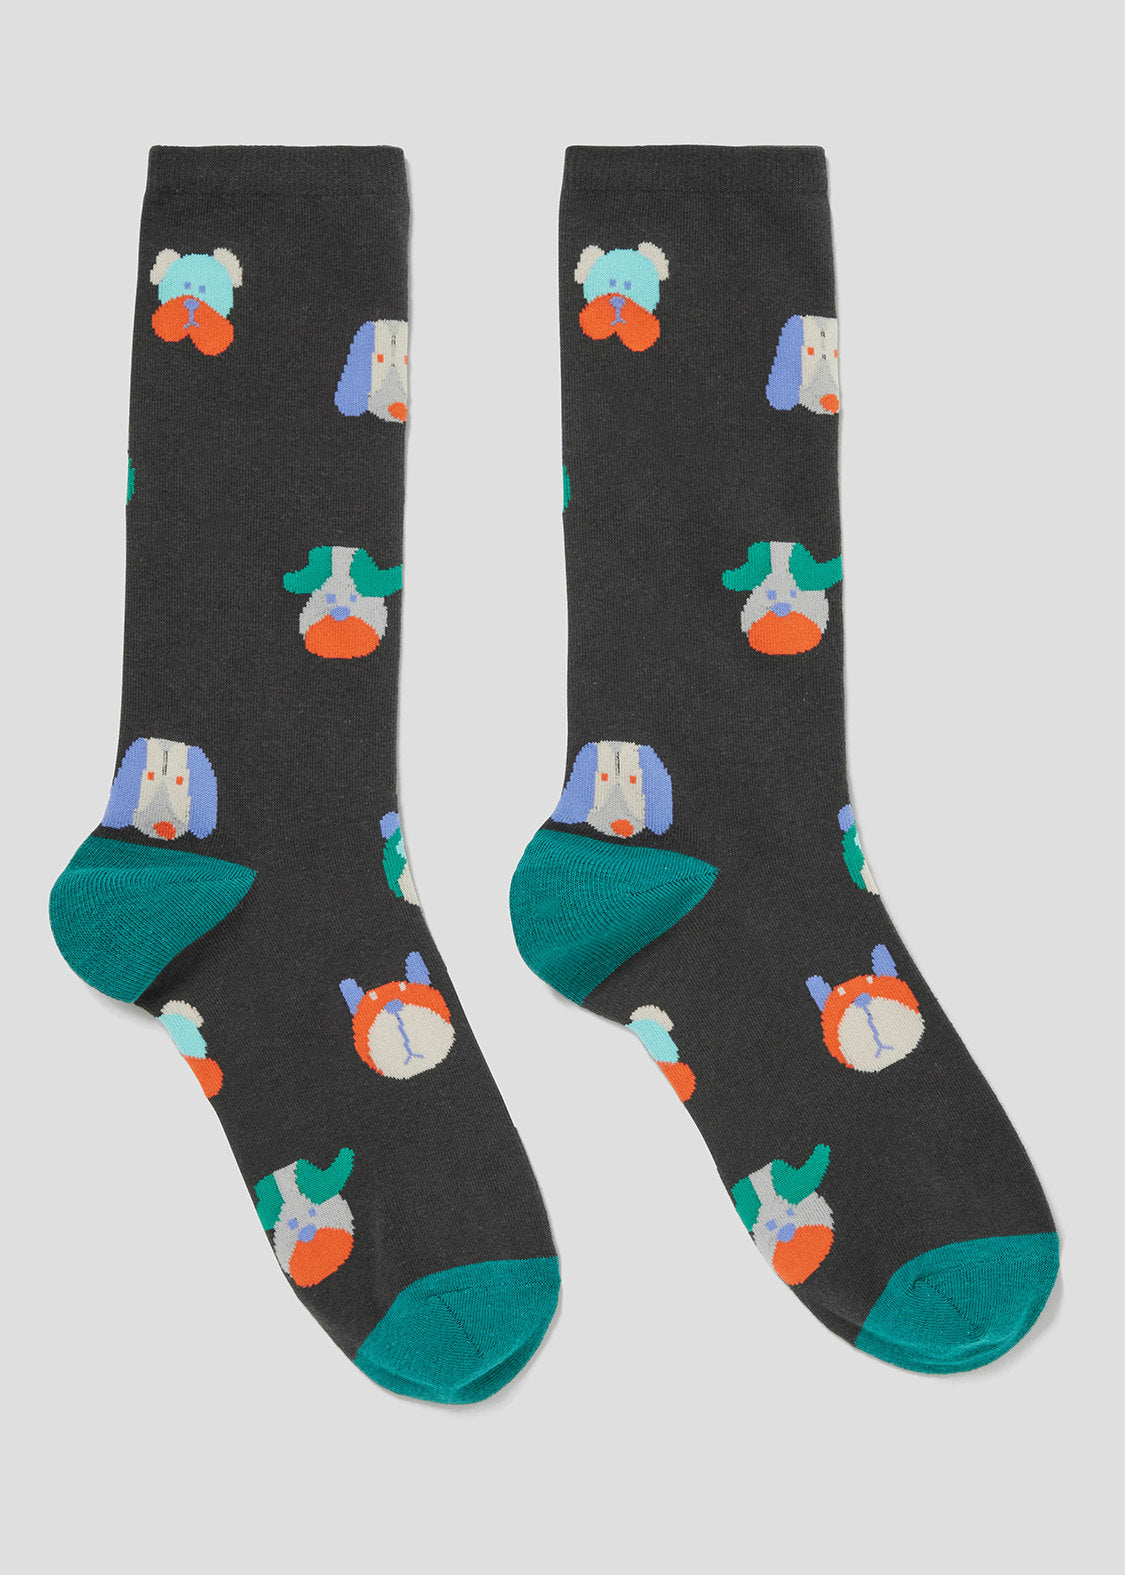 Long Socks (Busaiku Dogs)